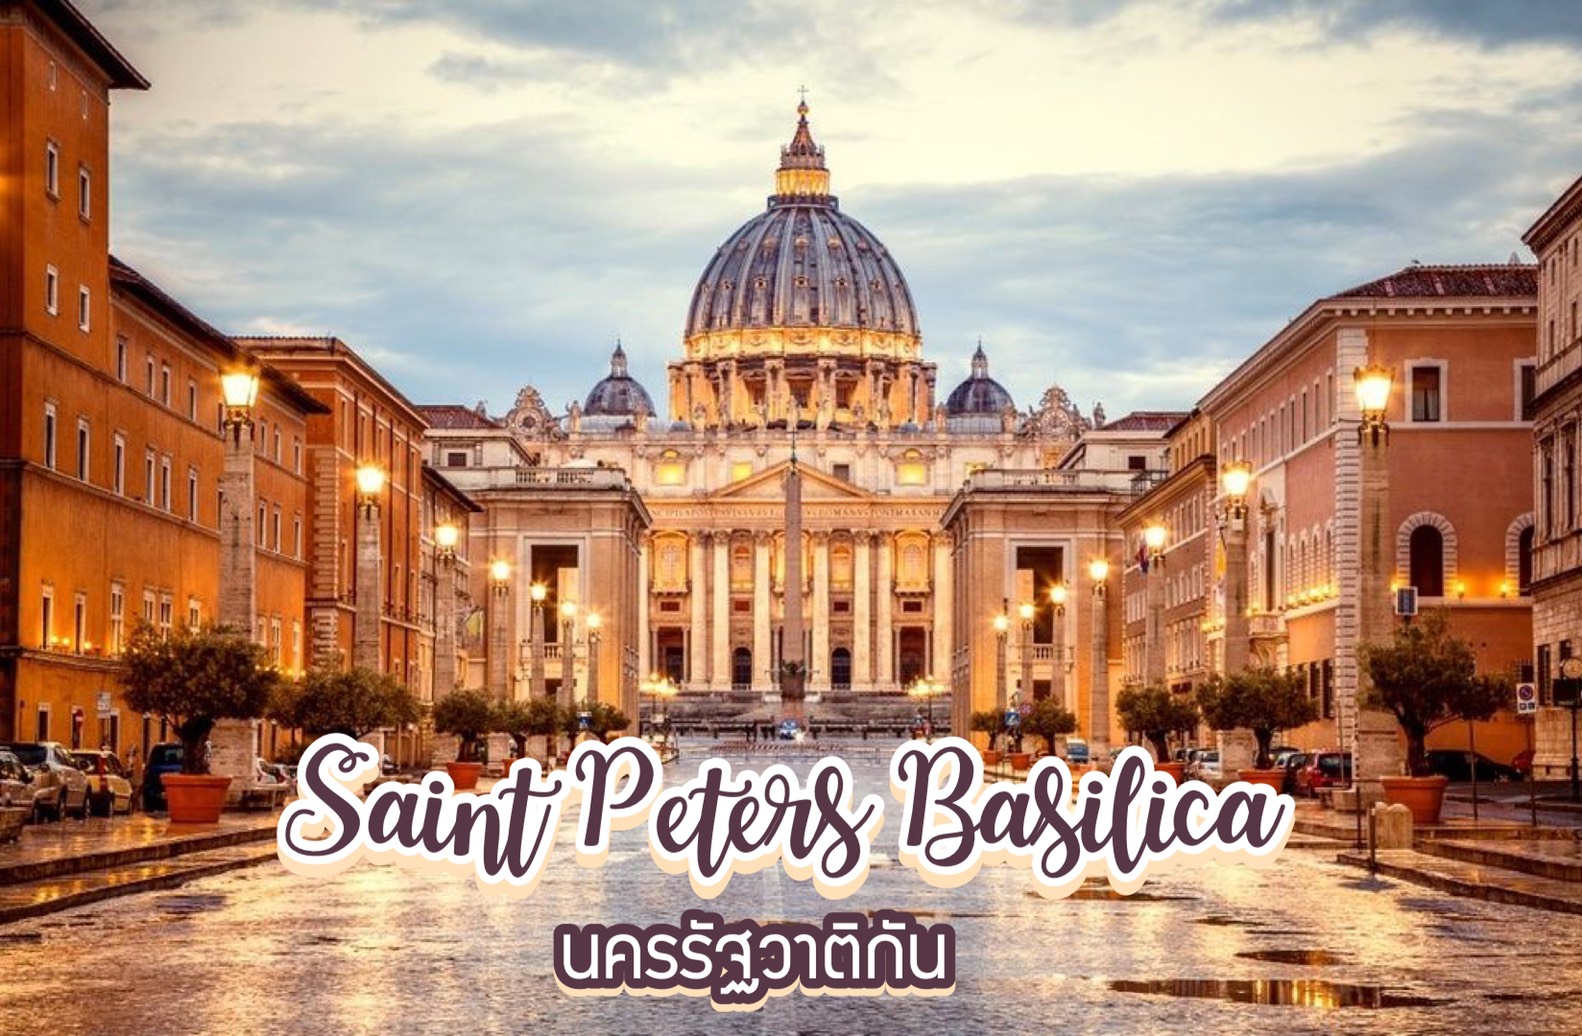 มหาวิหารเซนต์ปีเตอร์ Saint Peters Basilica นครรัฐวาติกัน